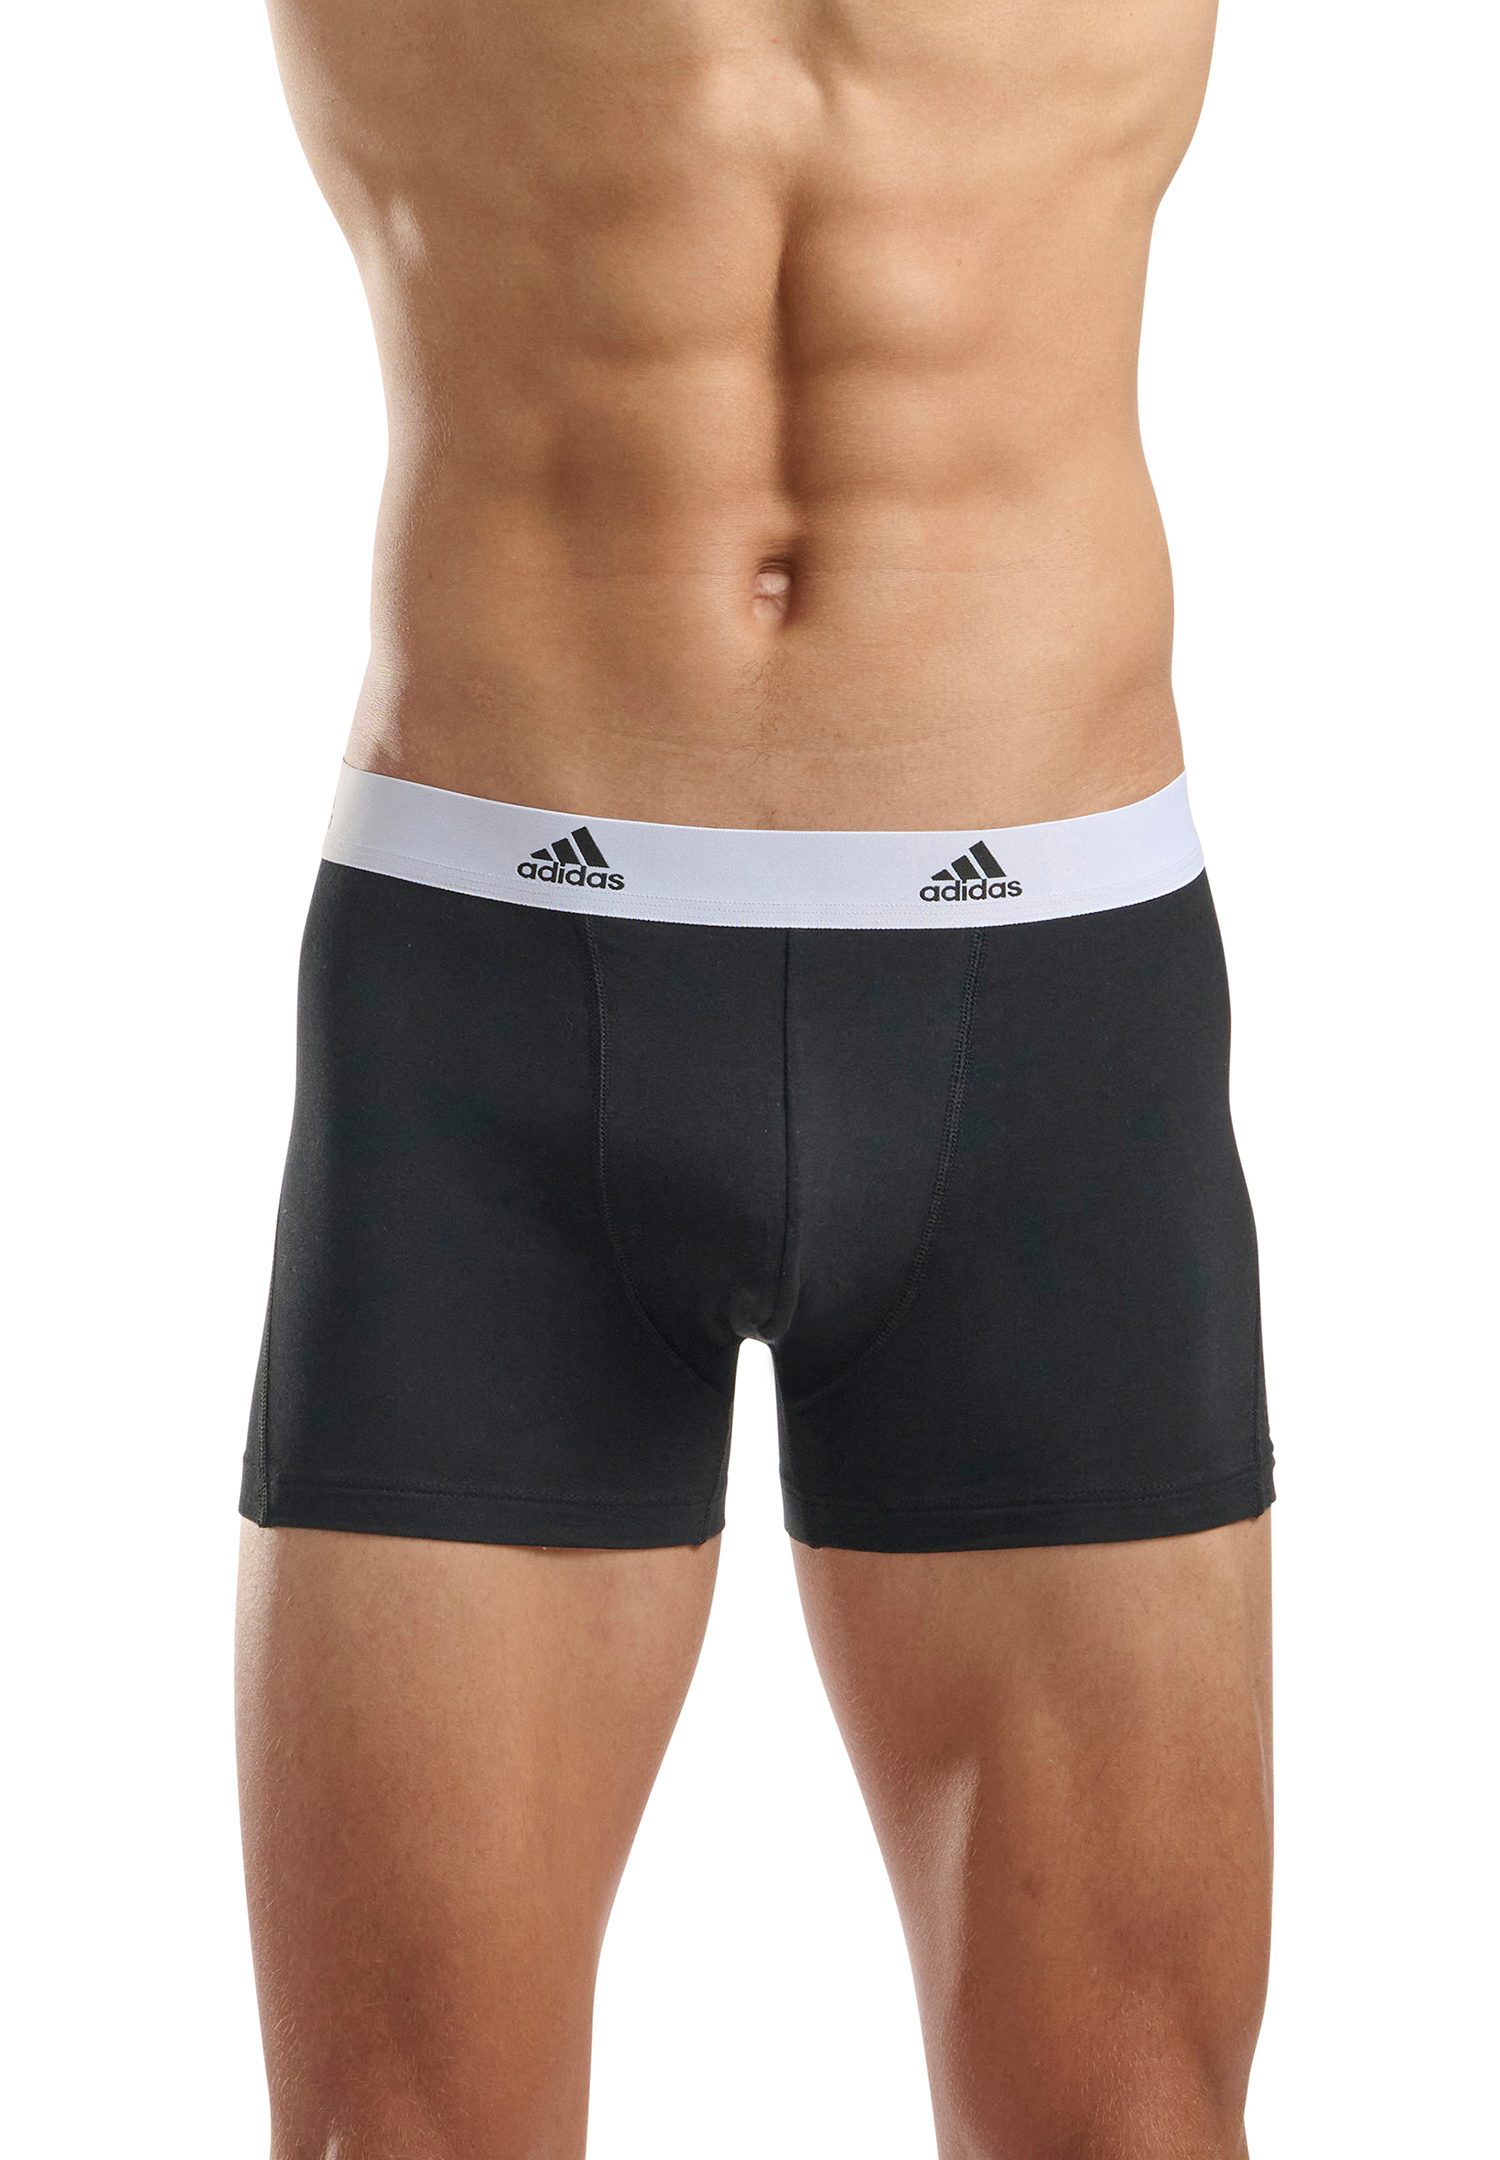 Adidas Basic Trunk Men Herren Unterhose Shorts Unterwäsche 3er Pack 